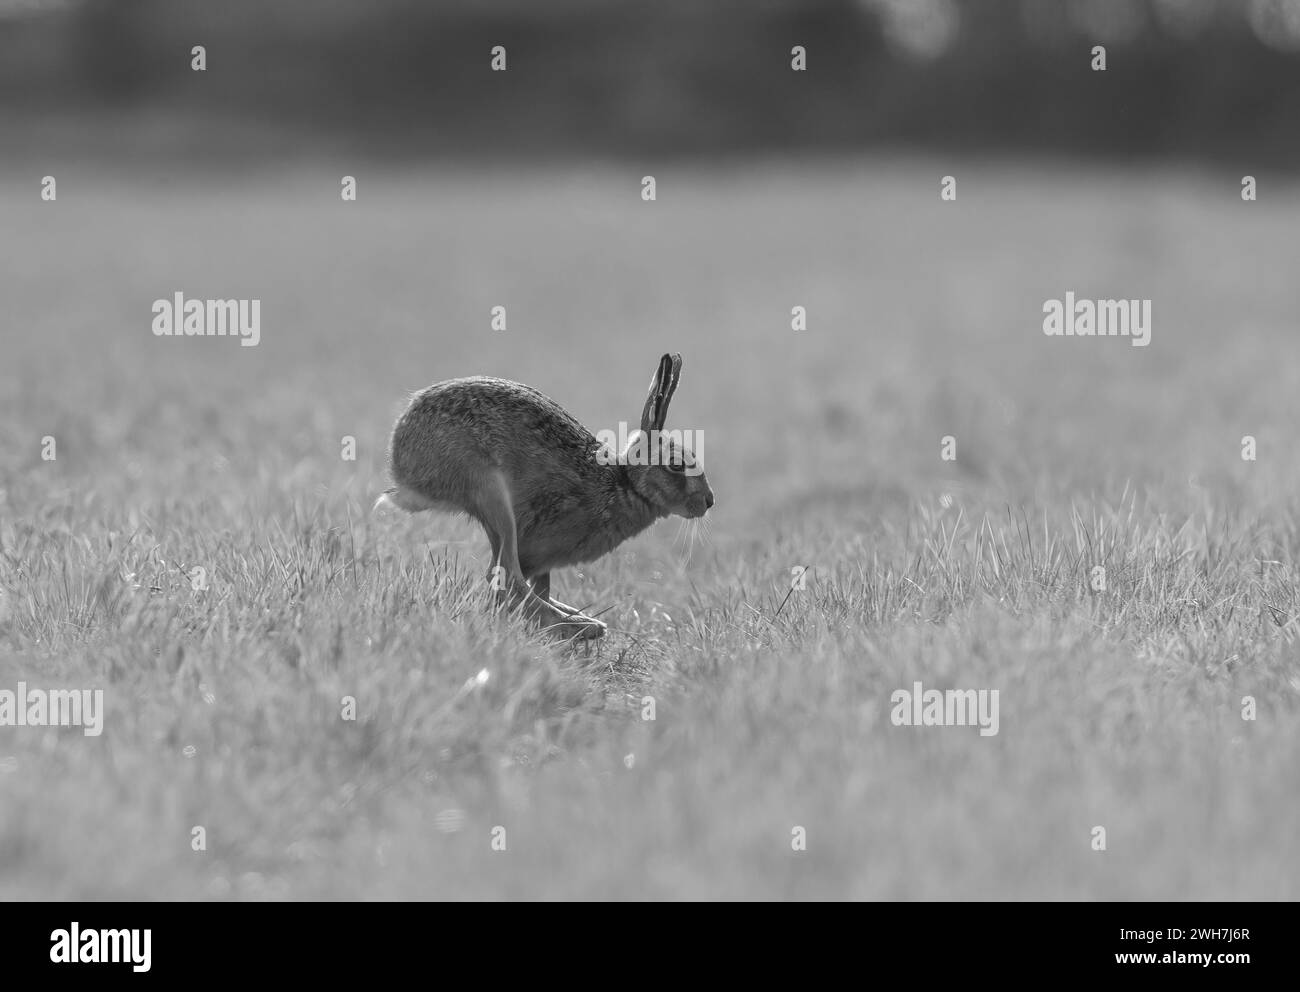 Der Shape Shifter – klassische, beschleunigte Form des Braunen Hasen, die hinteren Beine vor den Vorderbeinen, die flexible Wirbelsäule. In Schwarzweiß aufgenommen. Suffolk, Großbritannien Stockfoto